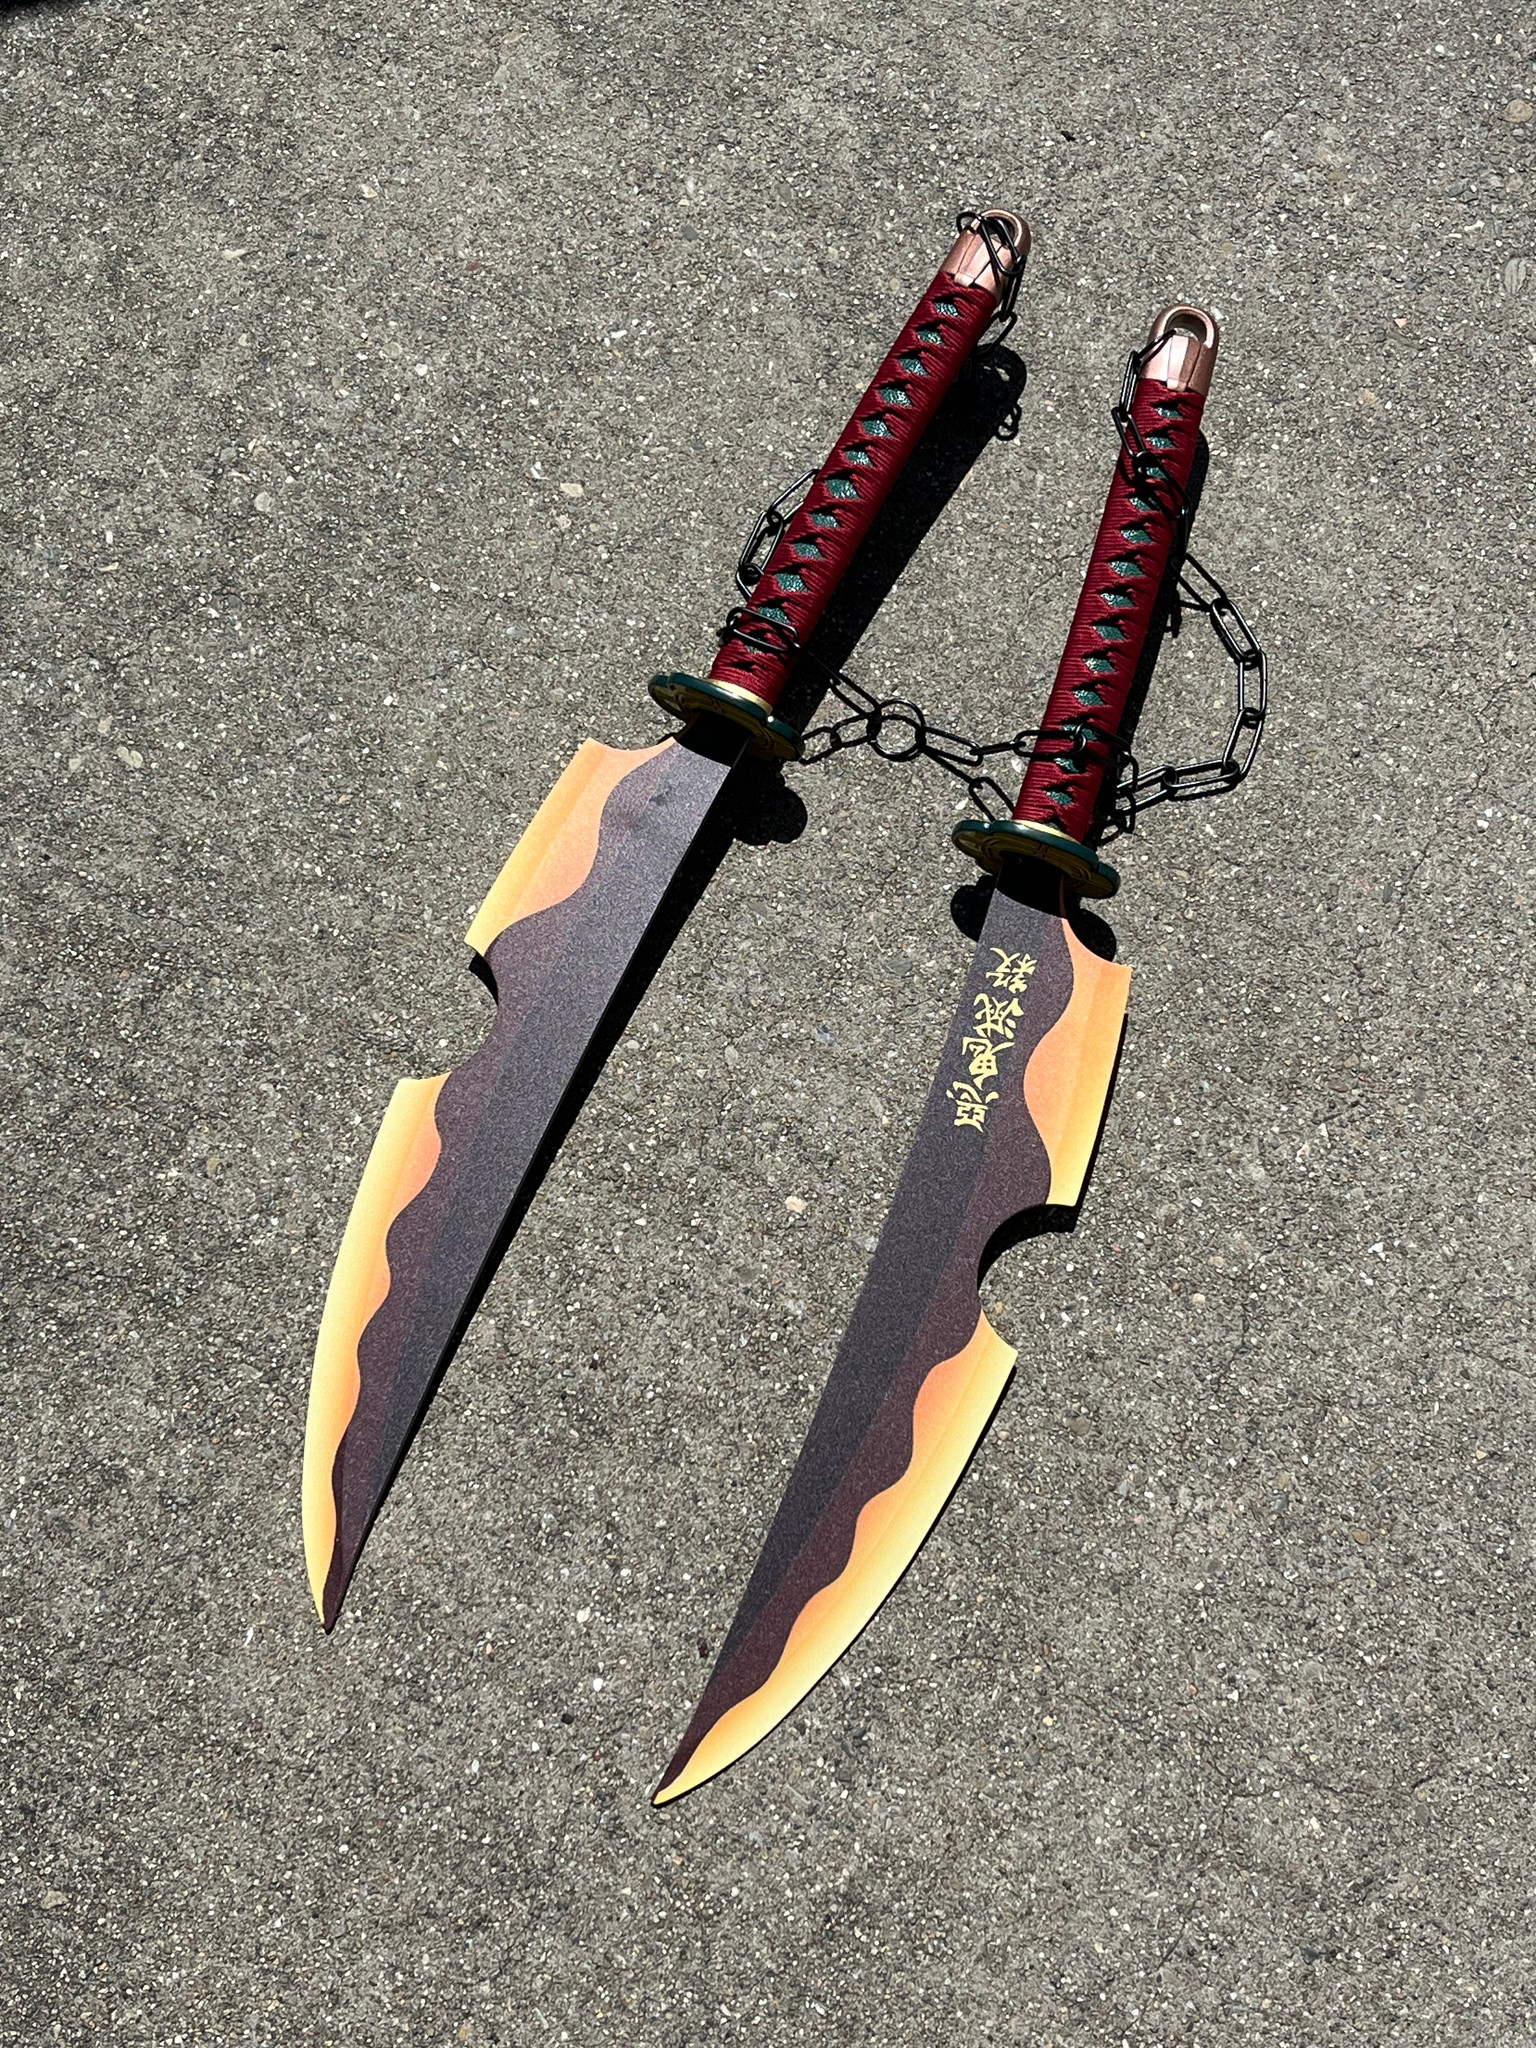 DEMON SLAYER: Tengen Double Wield Chained Swords (Non-Functional)